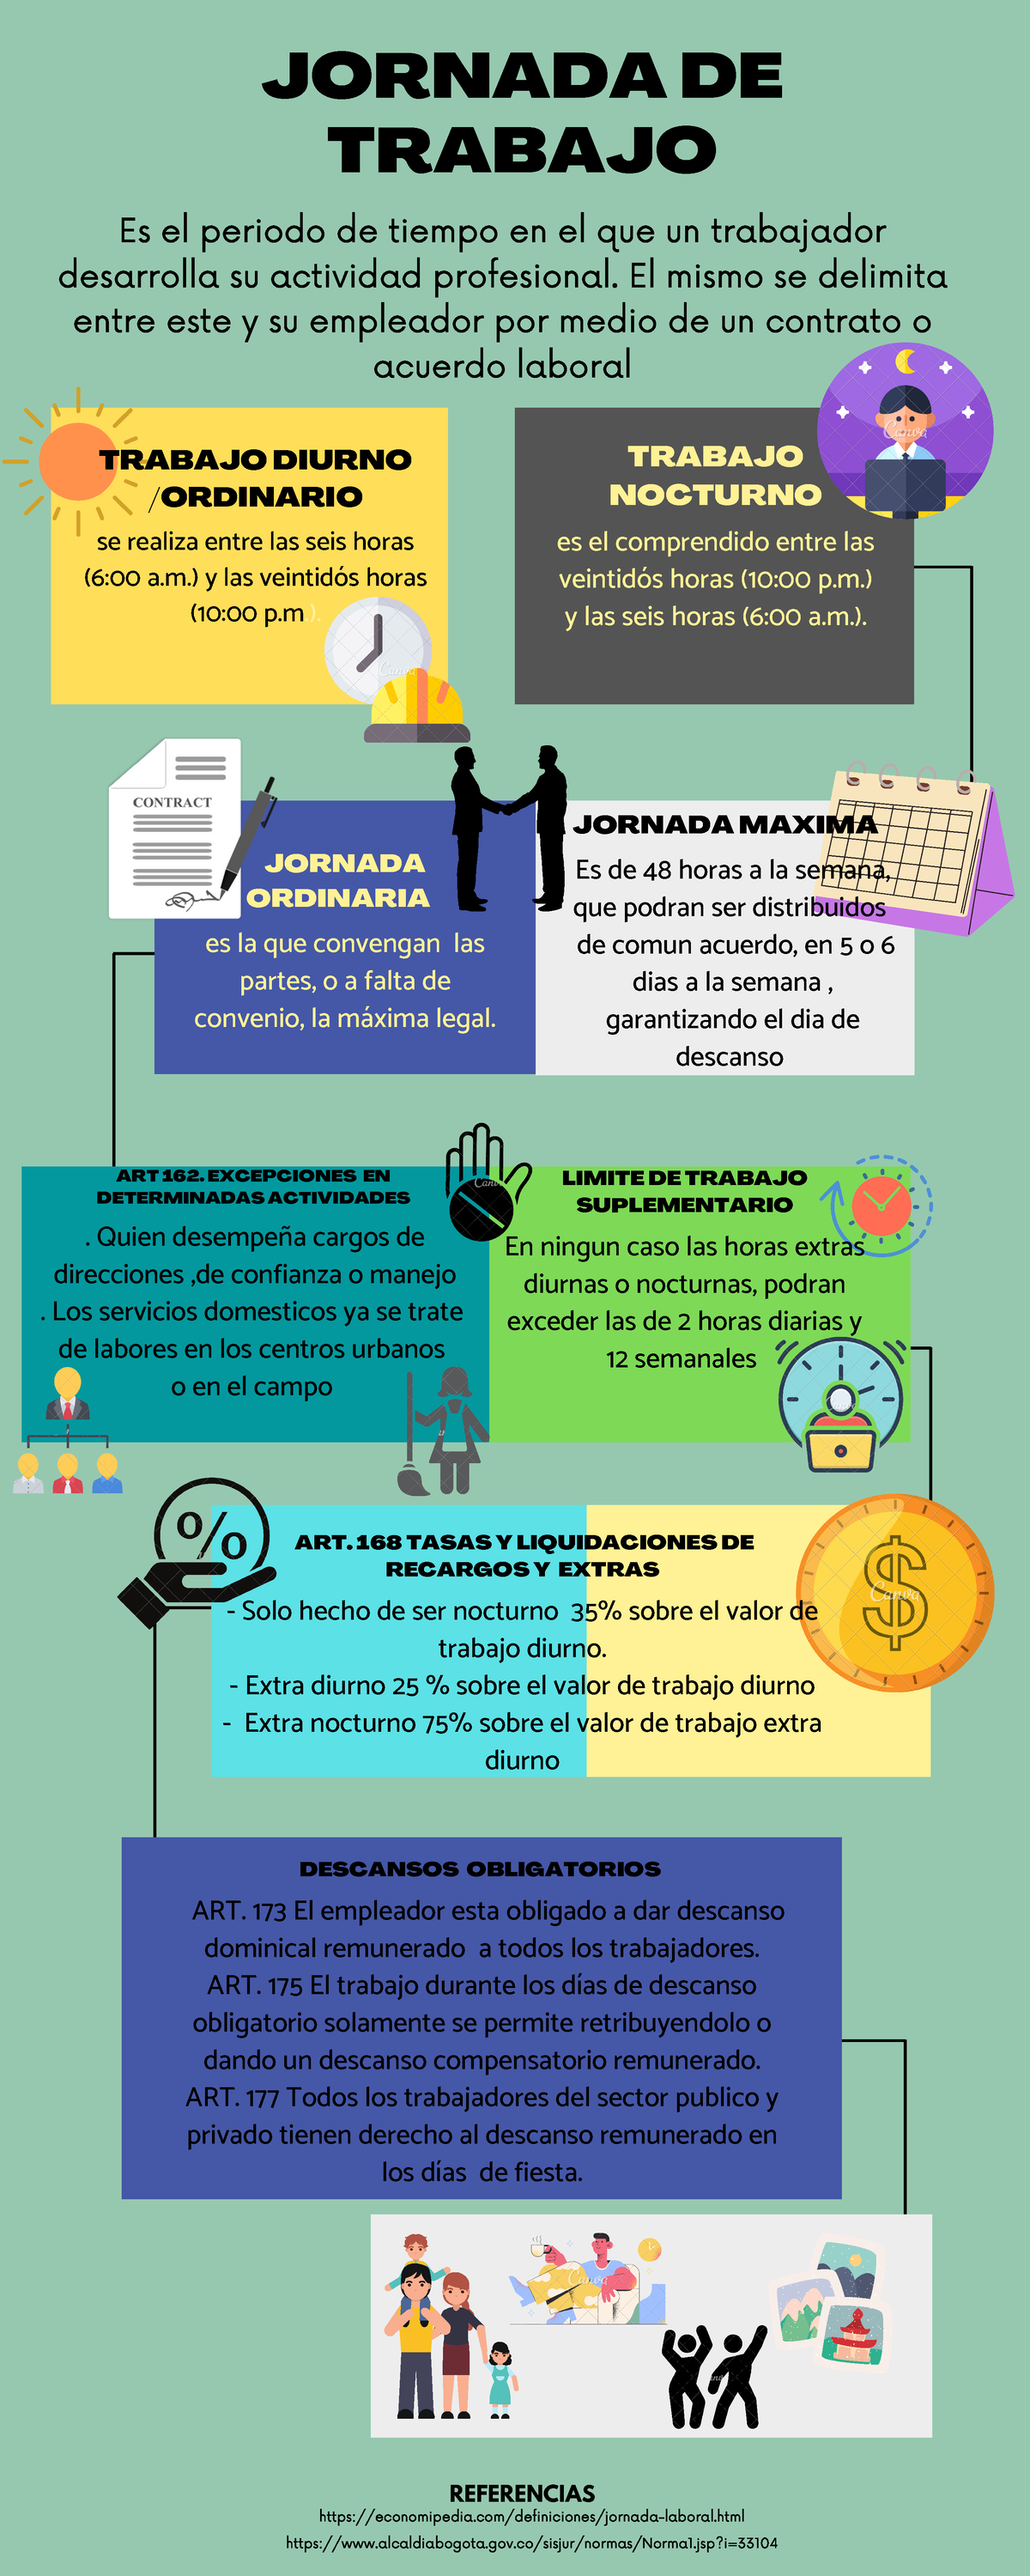 derecho al descanso laboral en colombia